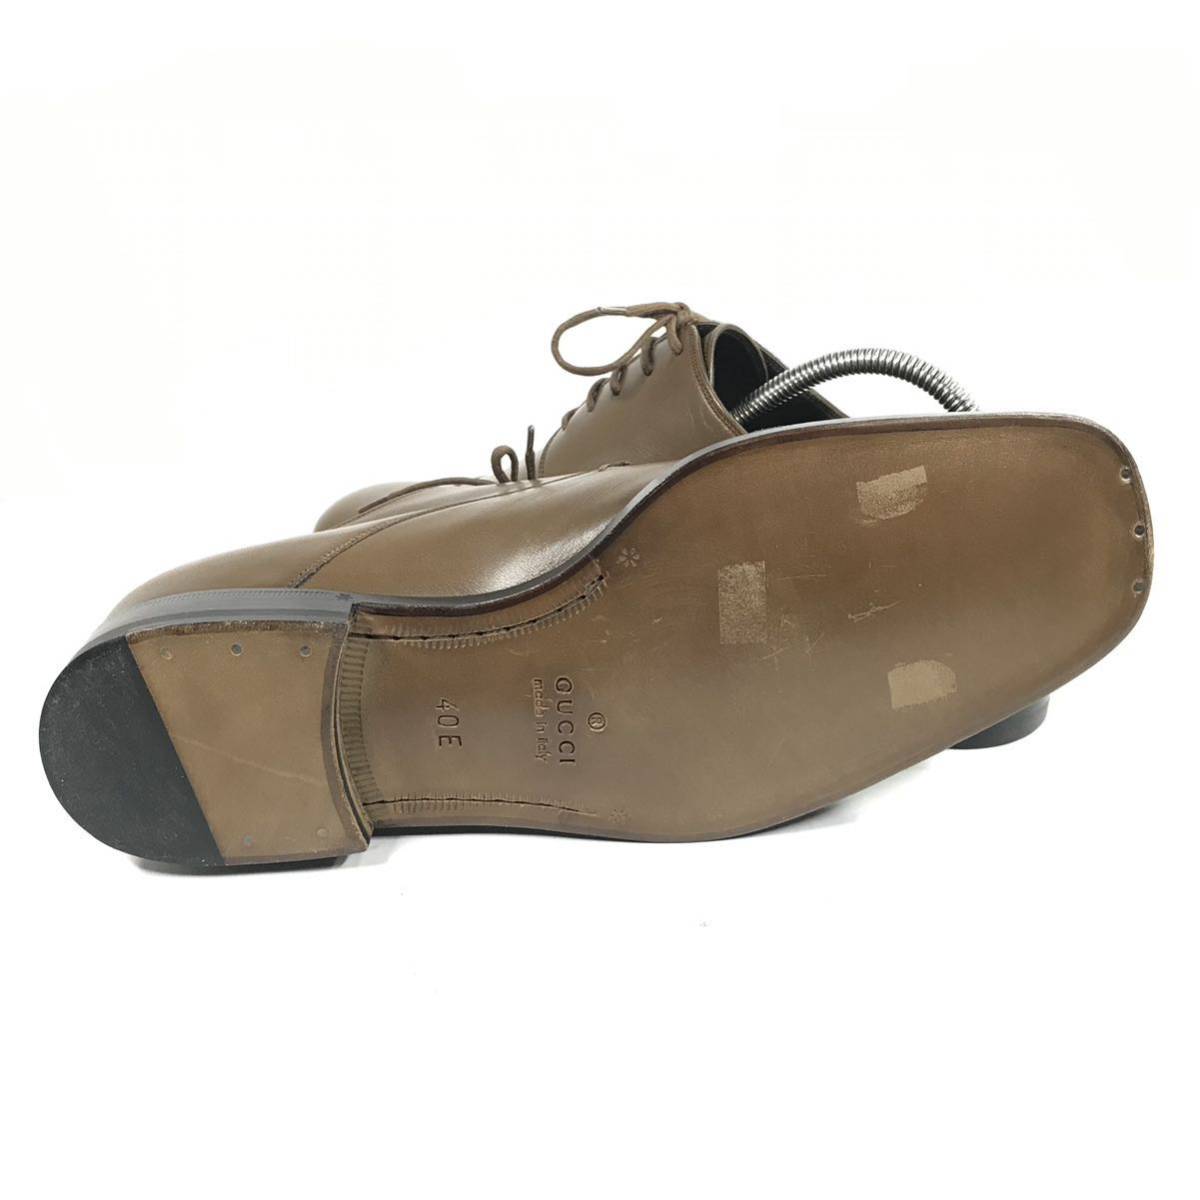  не использовался товар [ Gucci ] подлинный товар GUCCI обувь 25cm чай распорка chip бизнес обувь вне перо тип натуральная кожа мужской мужской Италия производства 40 E